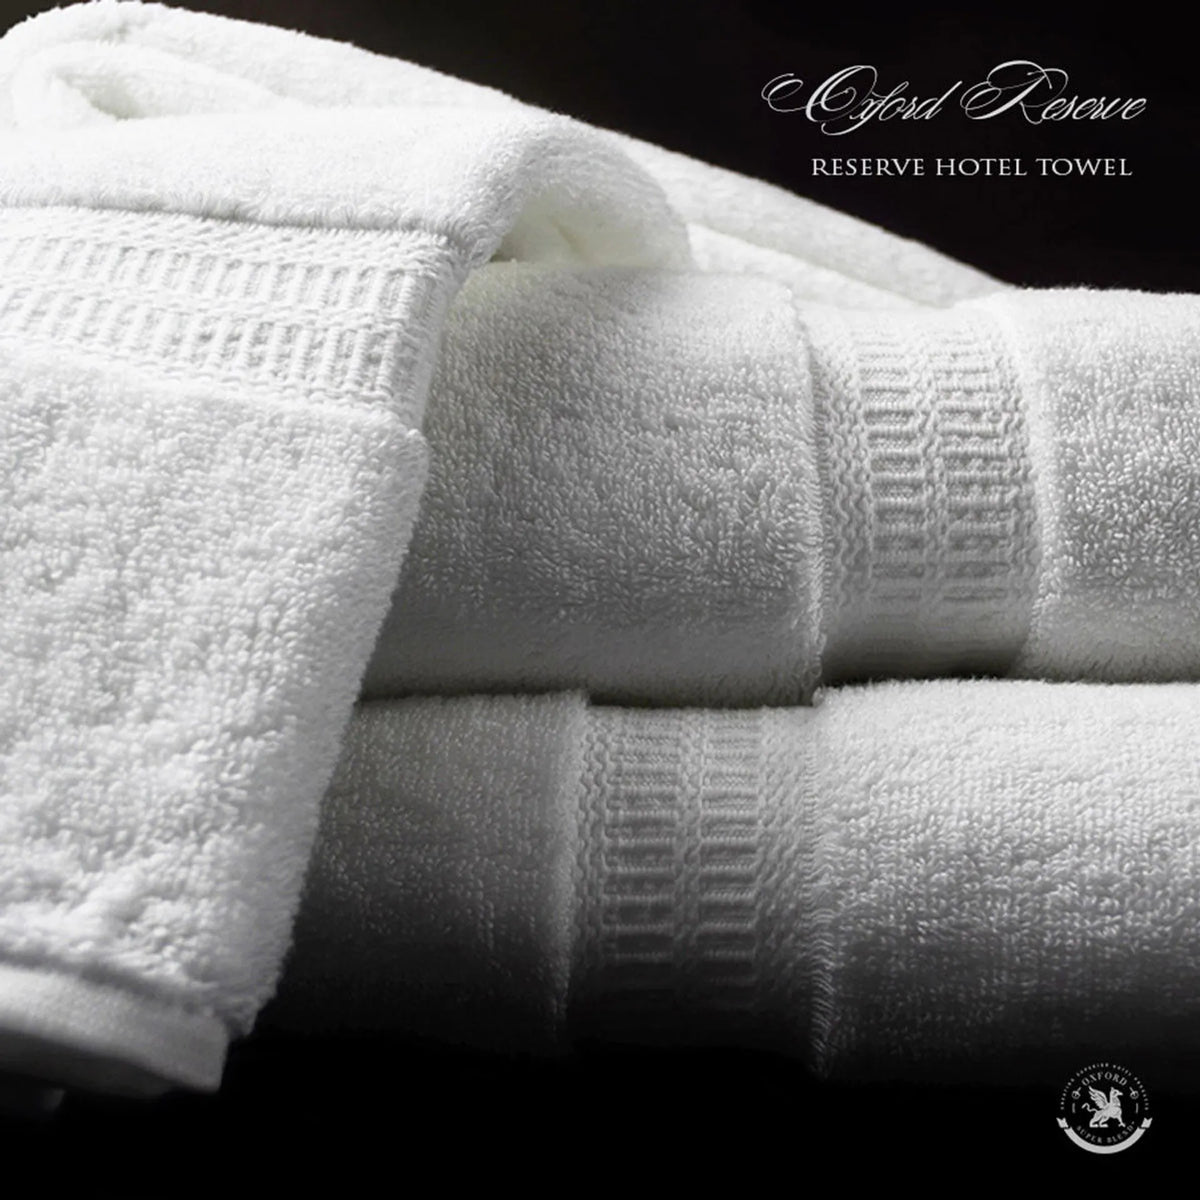 Bath Mat -  Oxford Reserve Towel